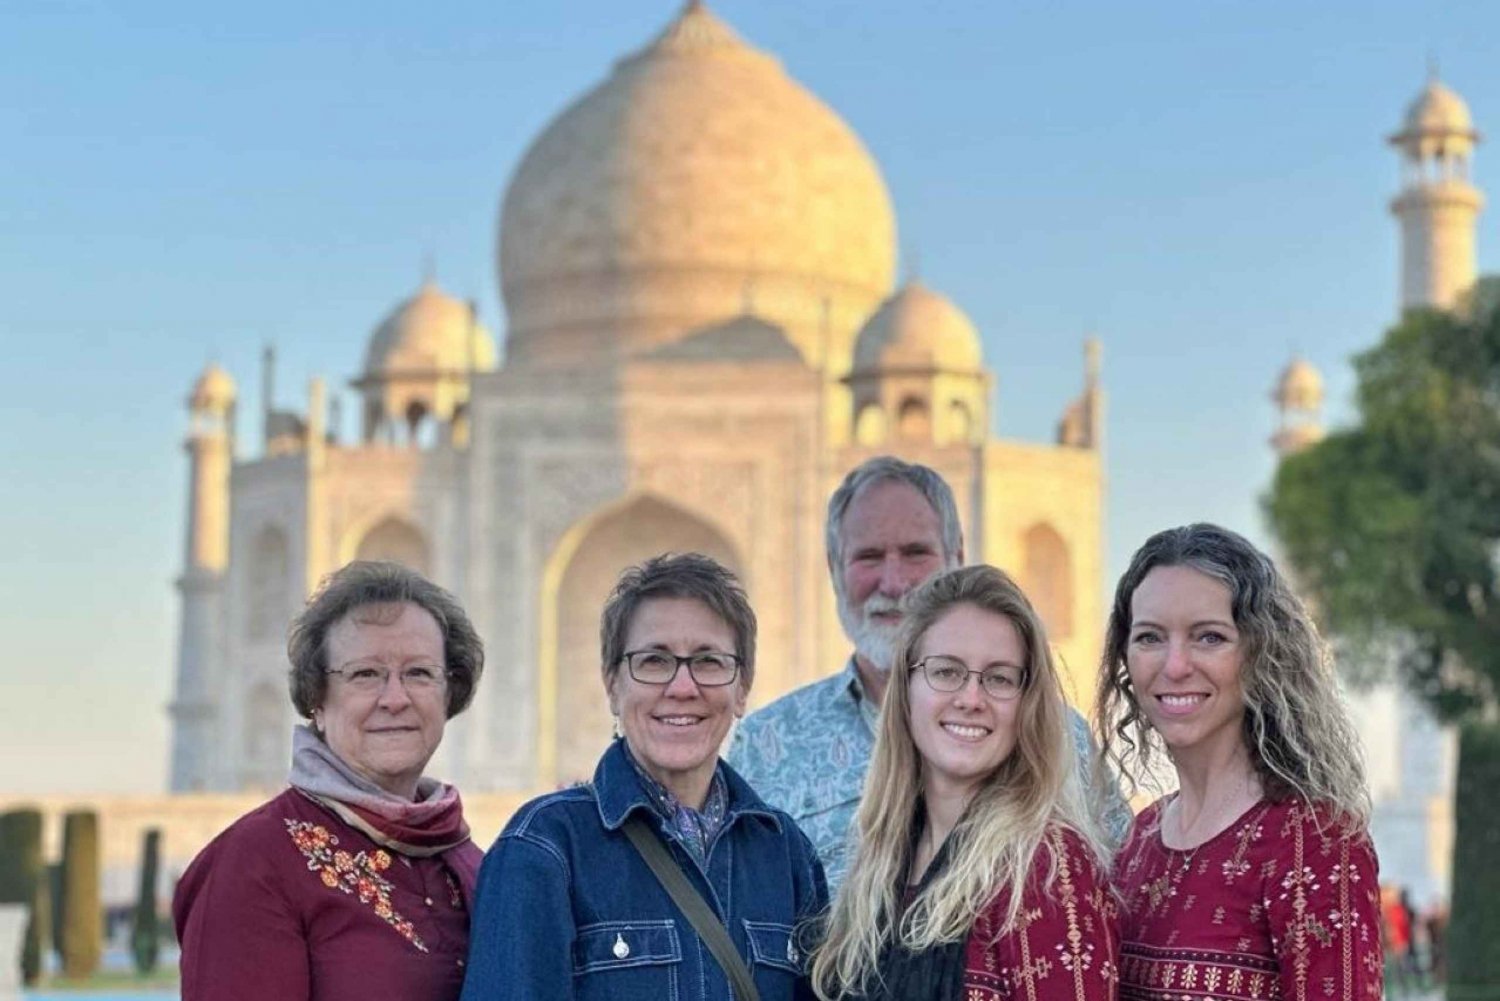 Fra Delhi: Golden Triangle Tour til Agra og Jaipur - 5 dage